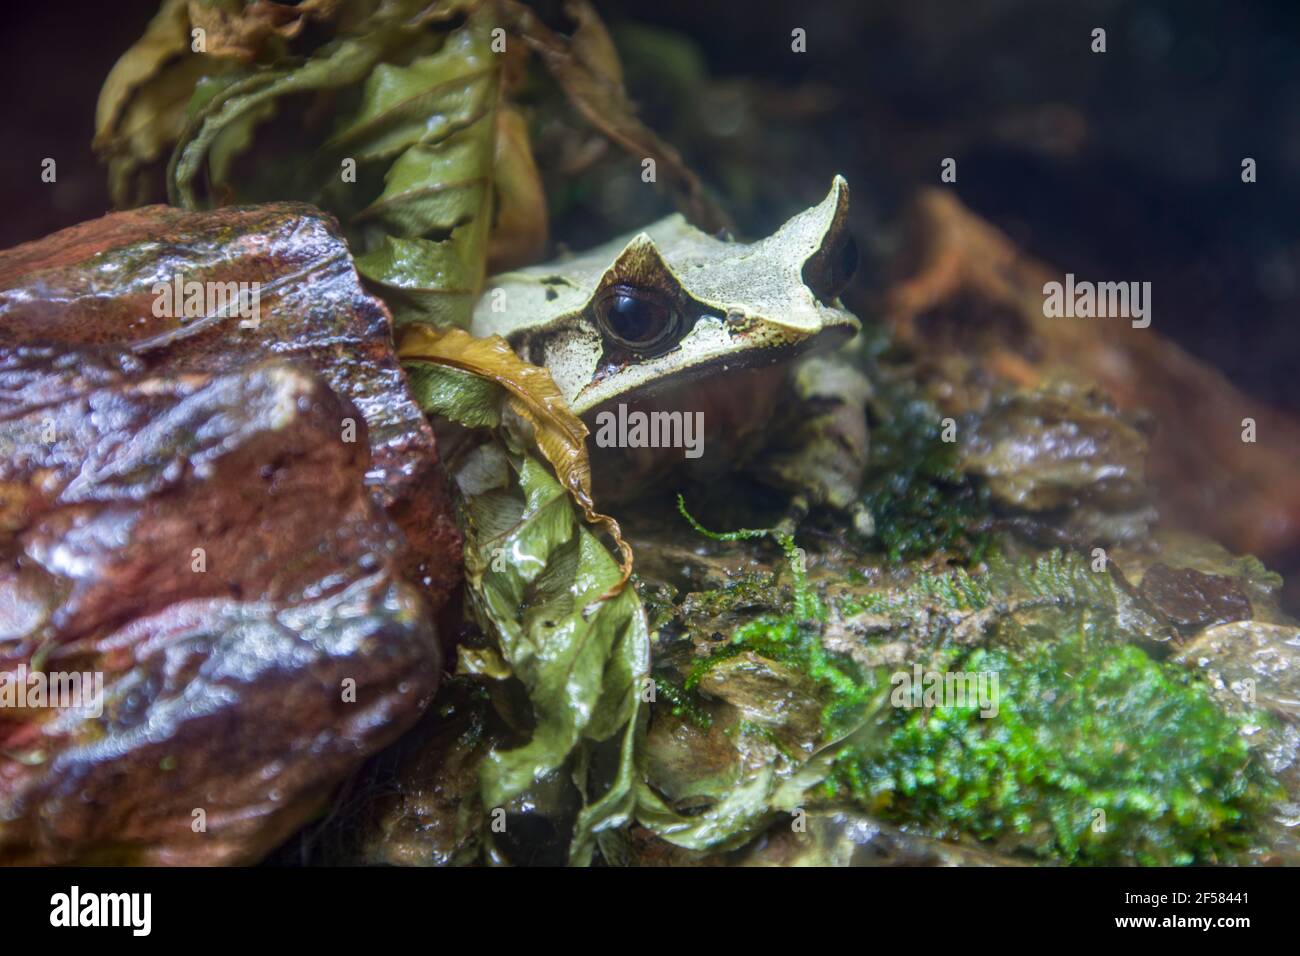 La grenouille à cornes longues (Megophrys nasuta) est une espèce de grenouille limitée aux zones de la forêt tropicale Du sud de la Thaïlande et de la Malaisie péninsulaire Banque D'Images